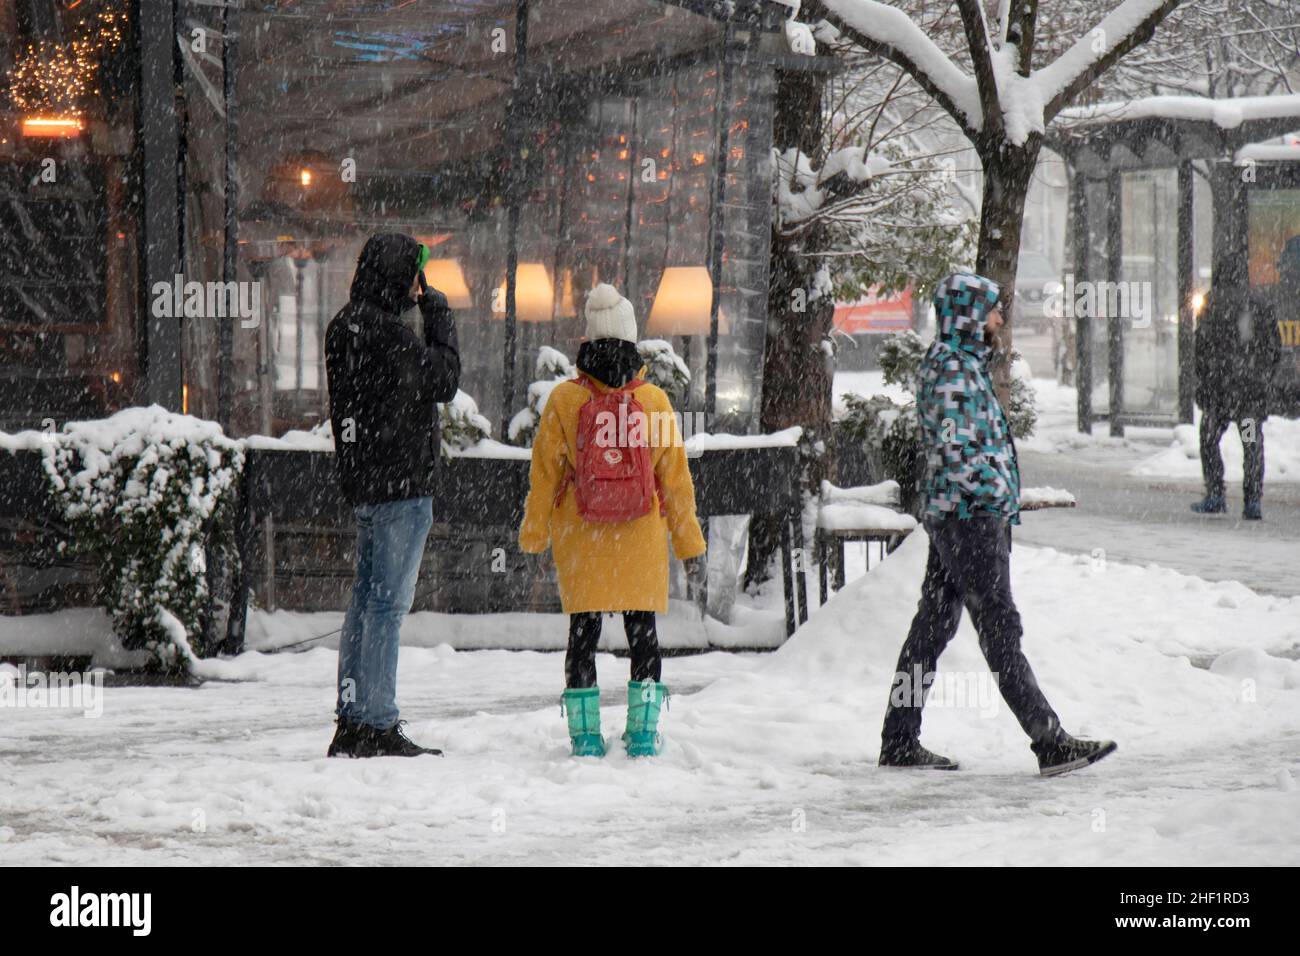 Belgrade, Serbie - 11 janvier 2022 : personnes marchant et attendant dans les rues enneigées de la ville pendant les fortes chutes de neige Banque D'Images